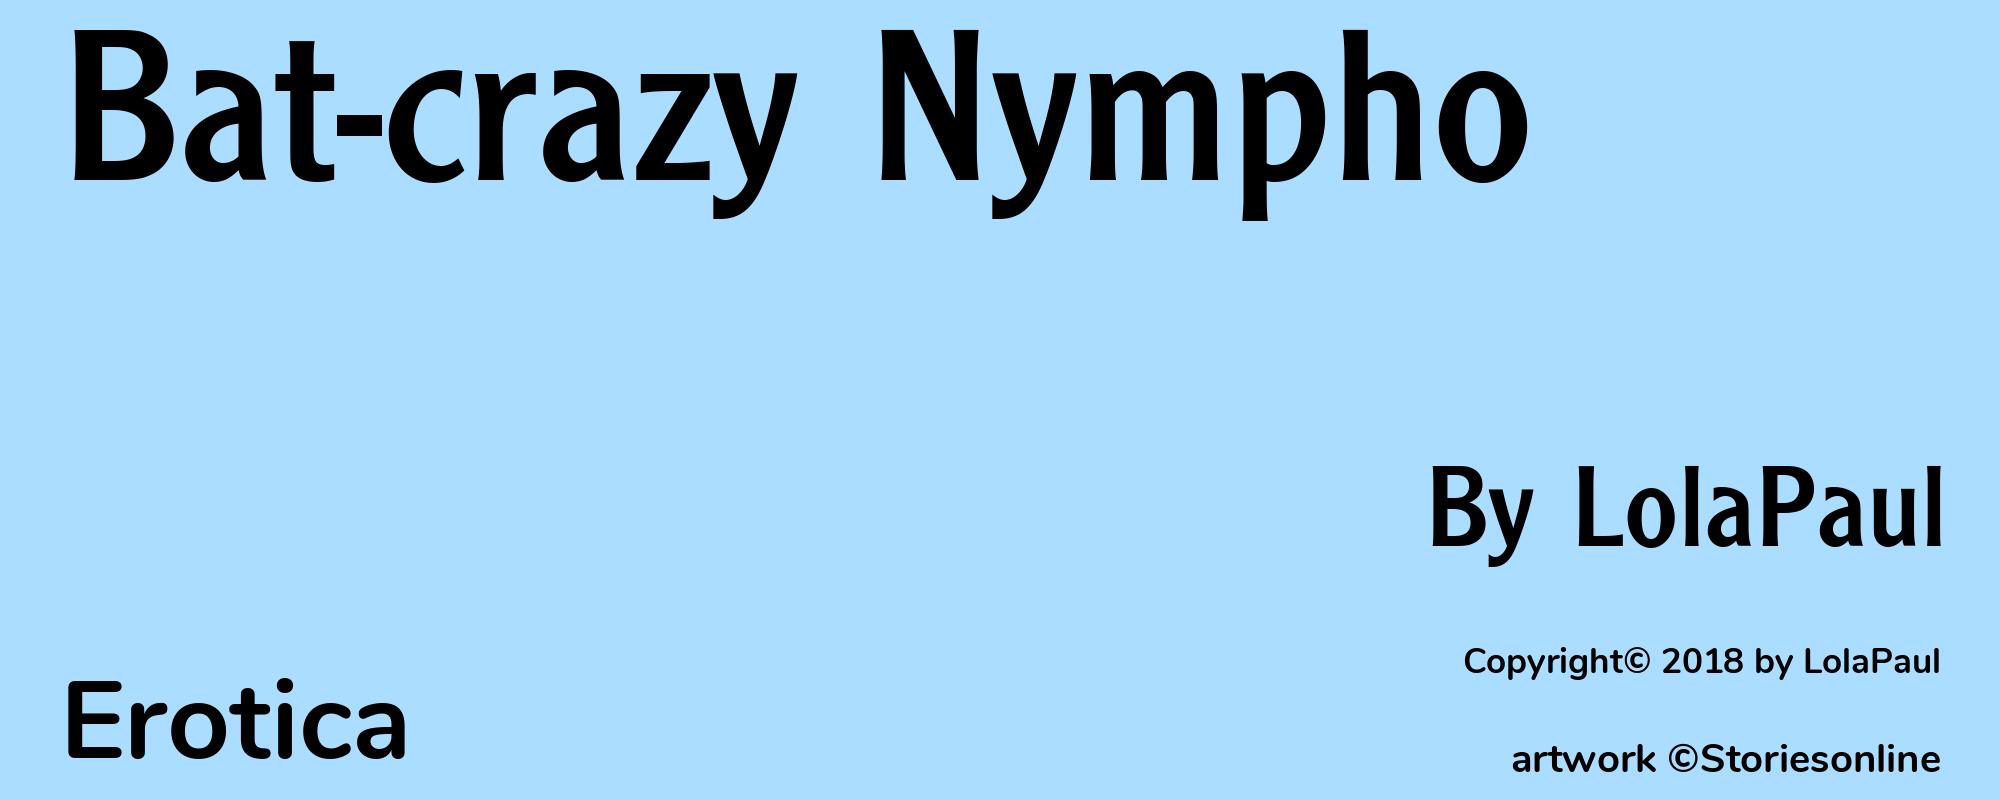 Bat-crazy Nympho - Cover